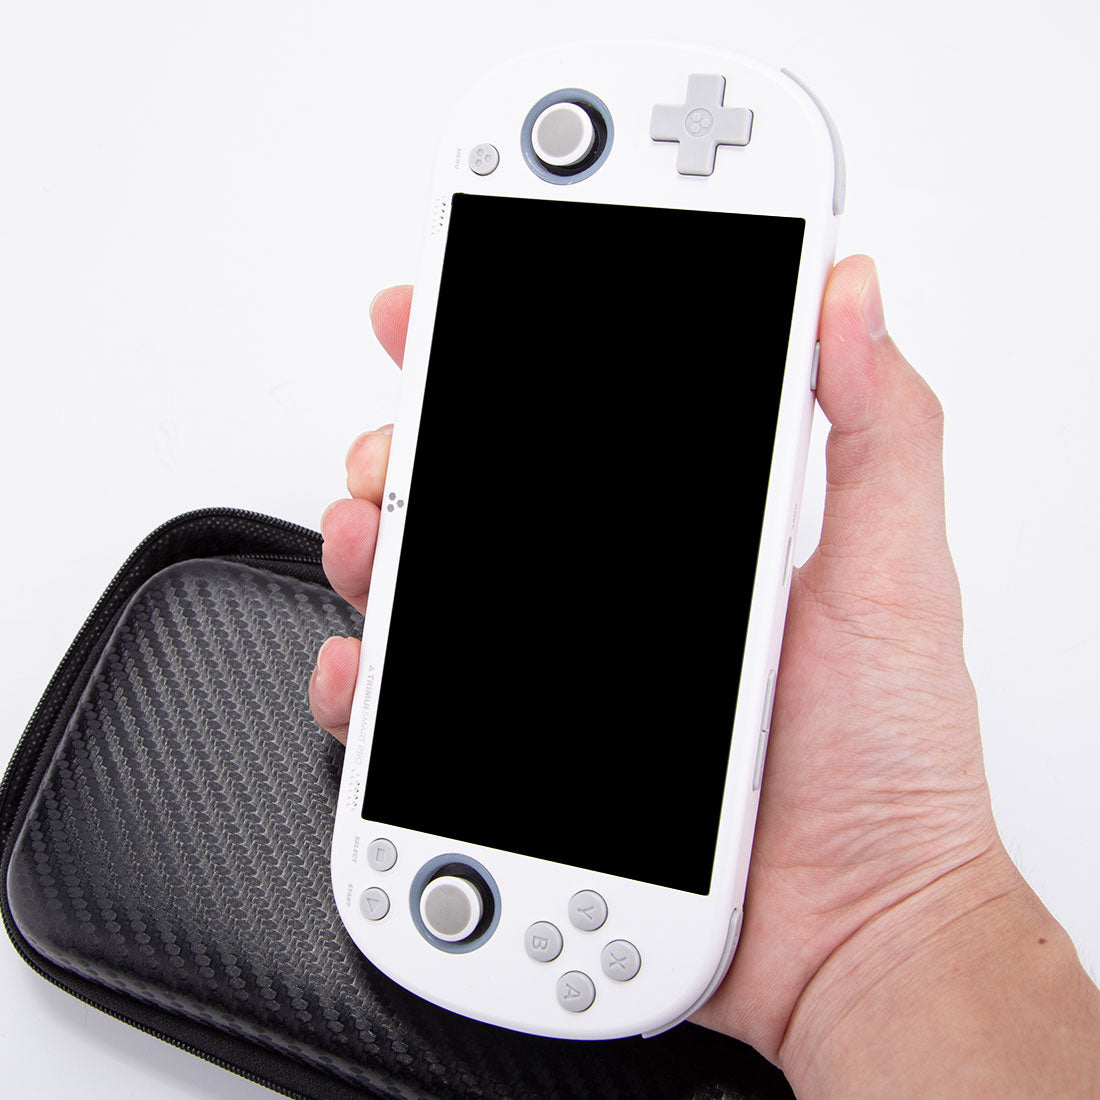 trimui-smart-pro-retro-handheld-game-console white (8).jpg__PID:47ea55f1-fc50-4145-983a-ad7220929bc4